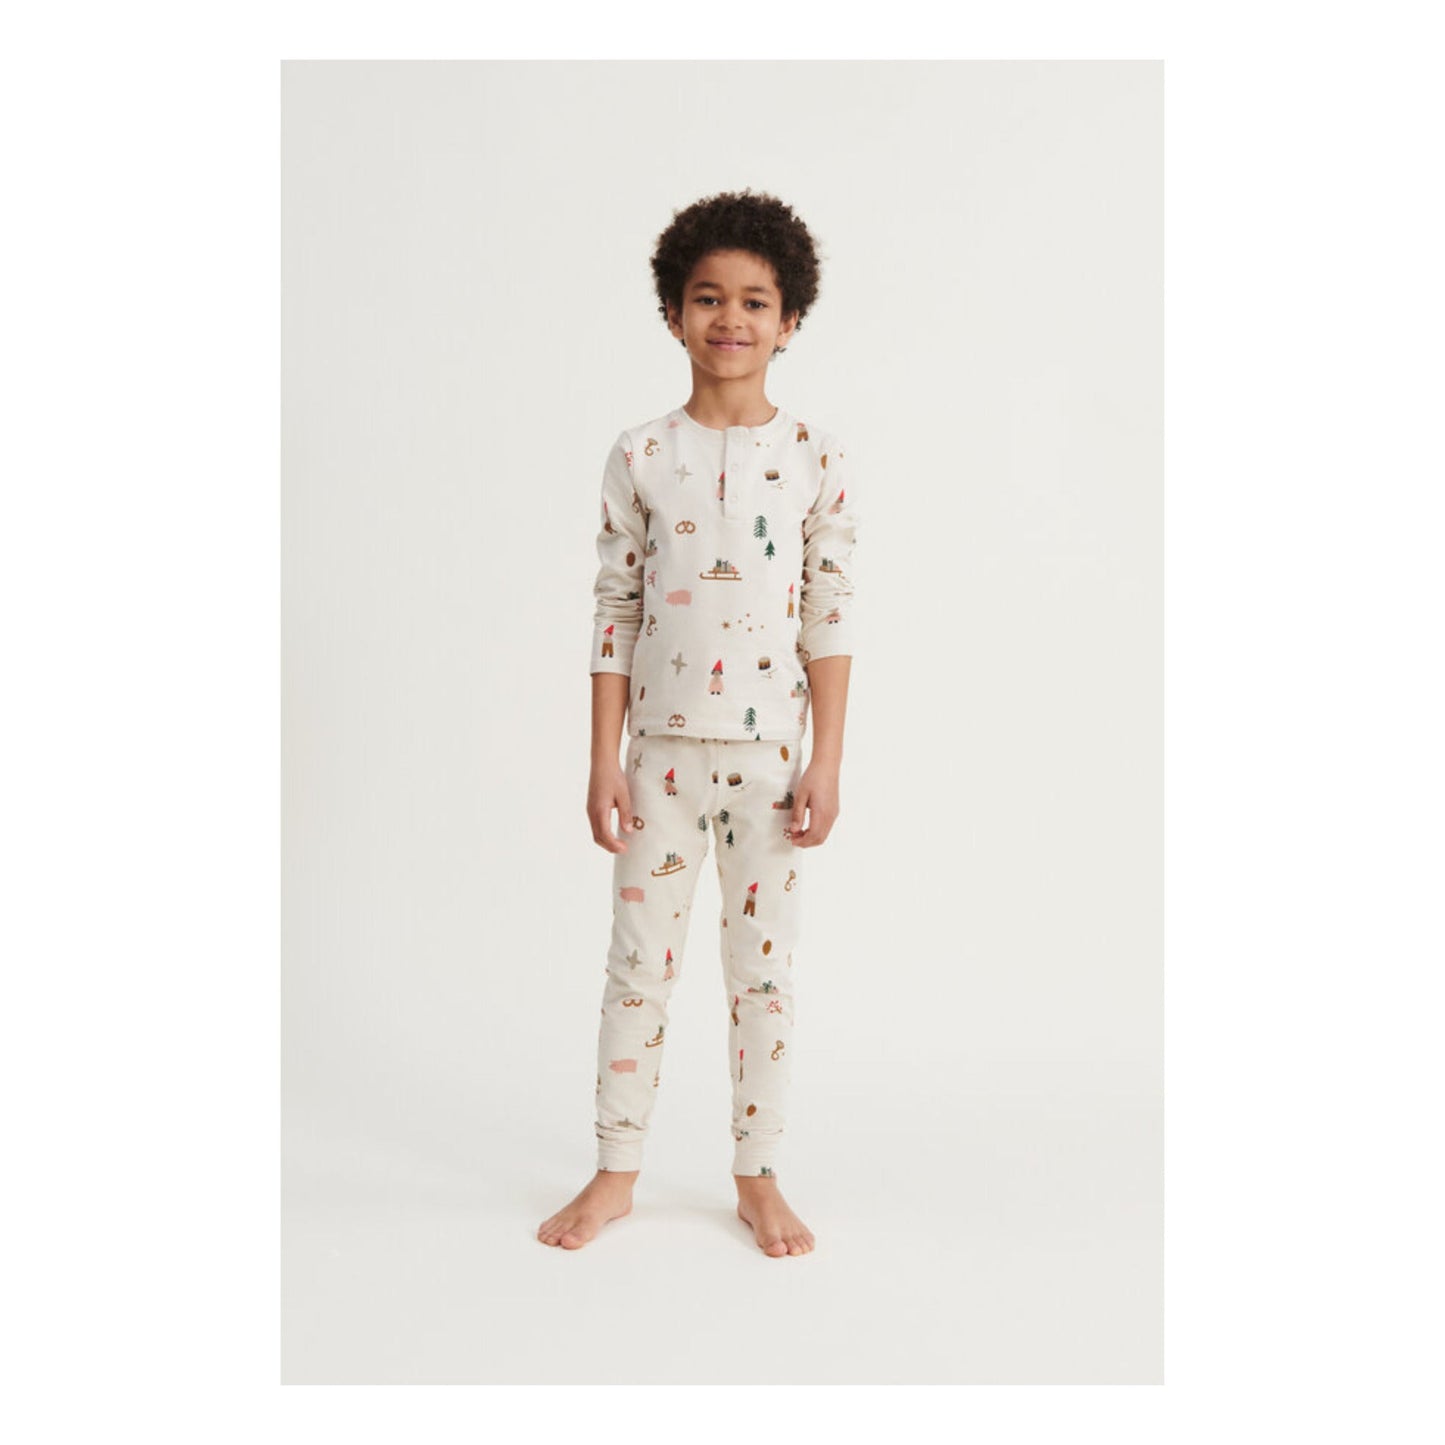 Wilhelm Printed Pyjamas Set - Holiday - Age 5